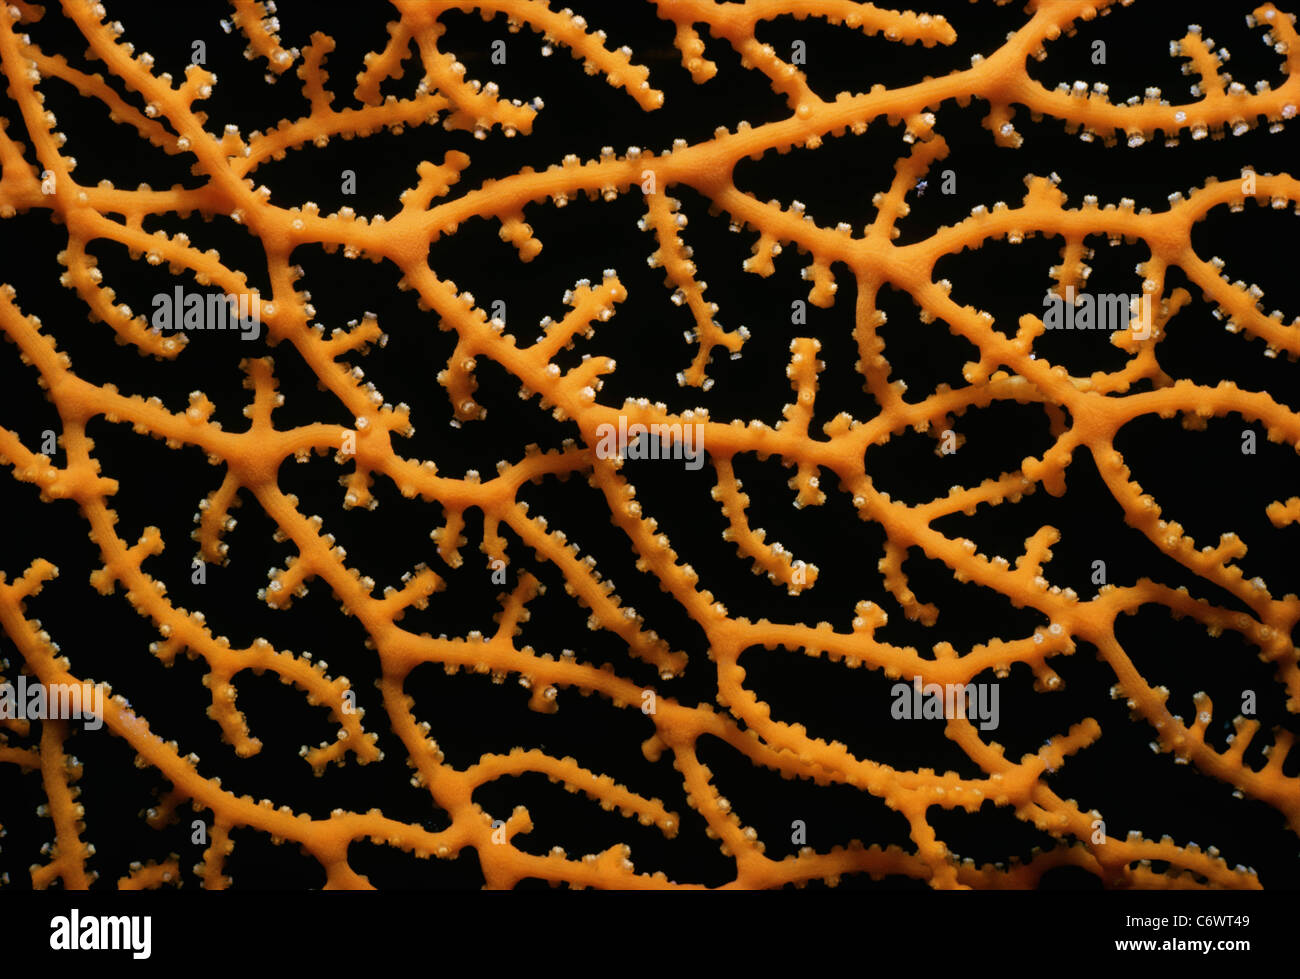 Corallo gorgonia (Gorgonacea) polipi chiuso. Egitto, Mar Rosso Foto Stock